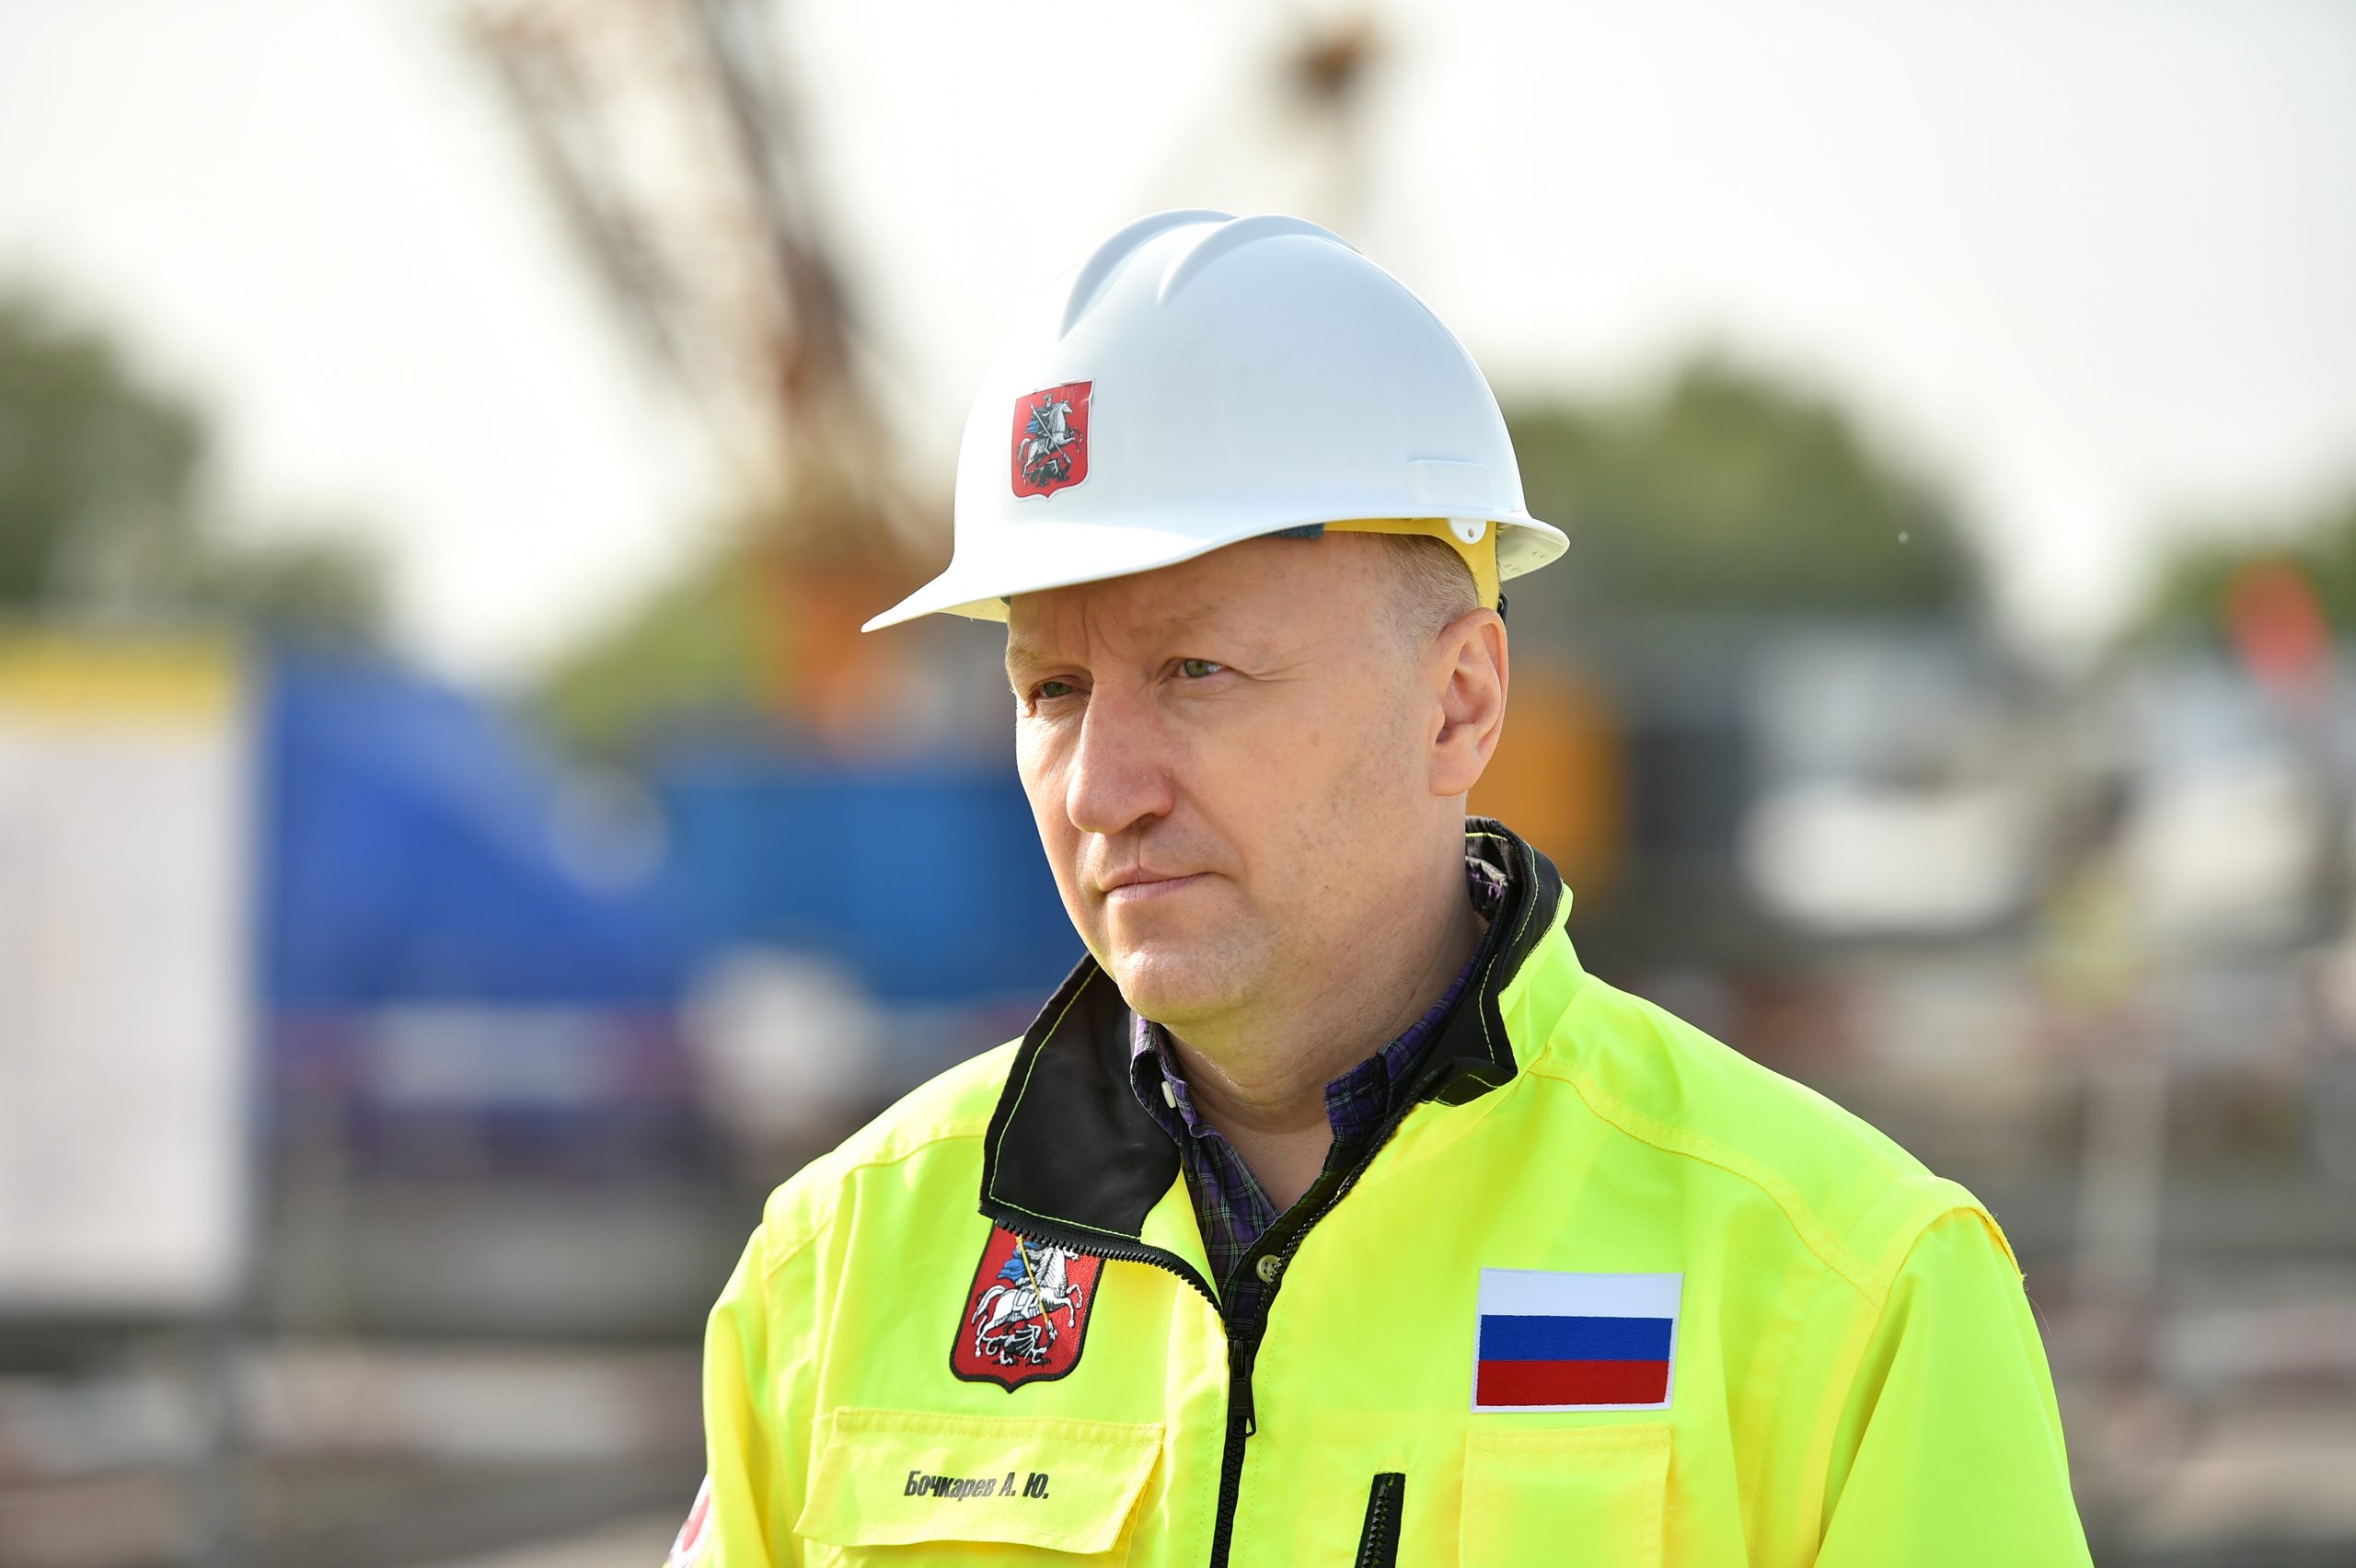 Андрей Бочкарев: Строительство электродепо «Южное» завершено почти на четверть